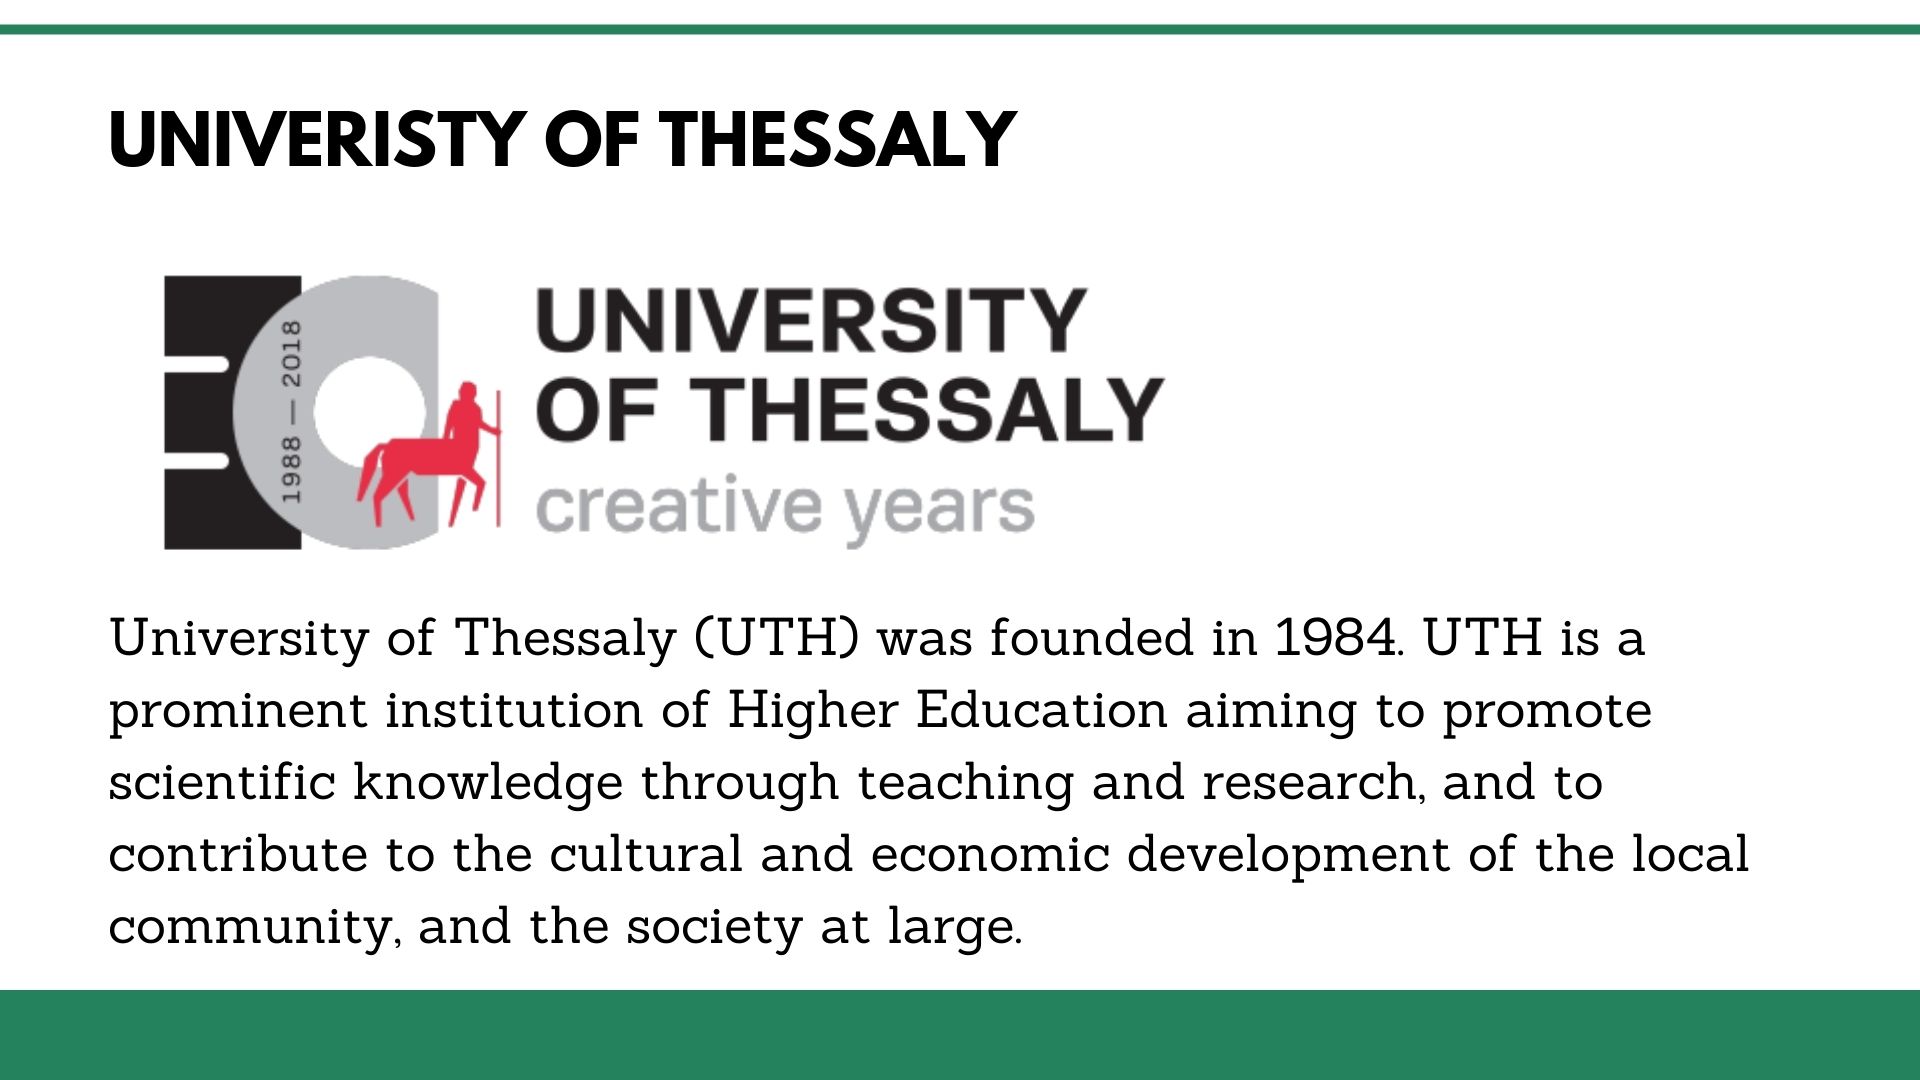 Univeristy of Thessaly